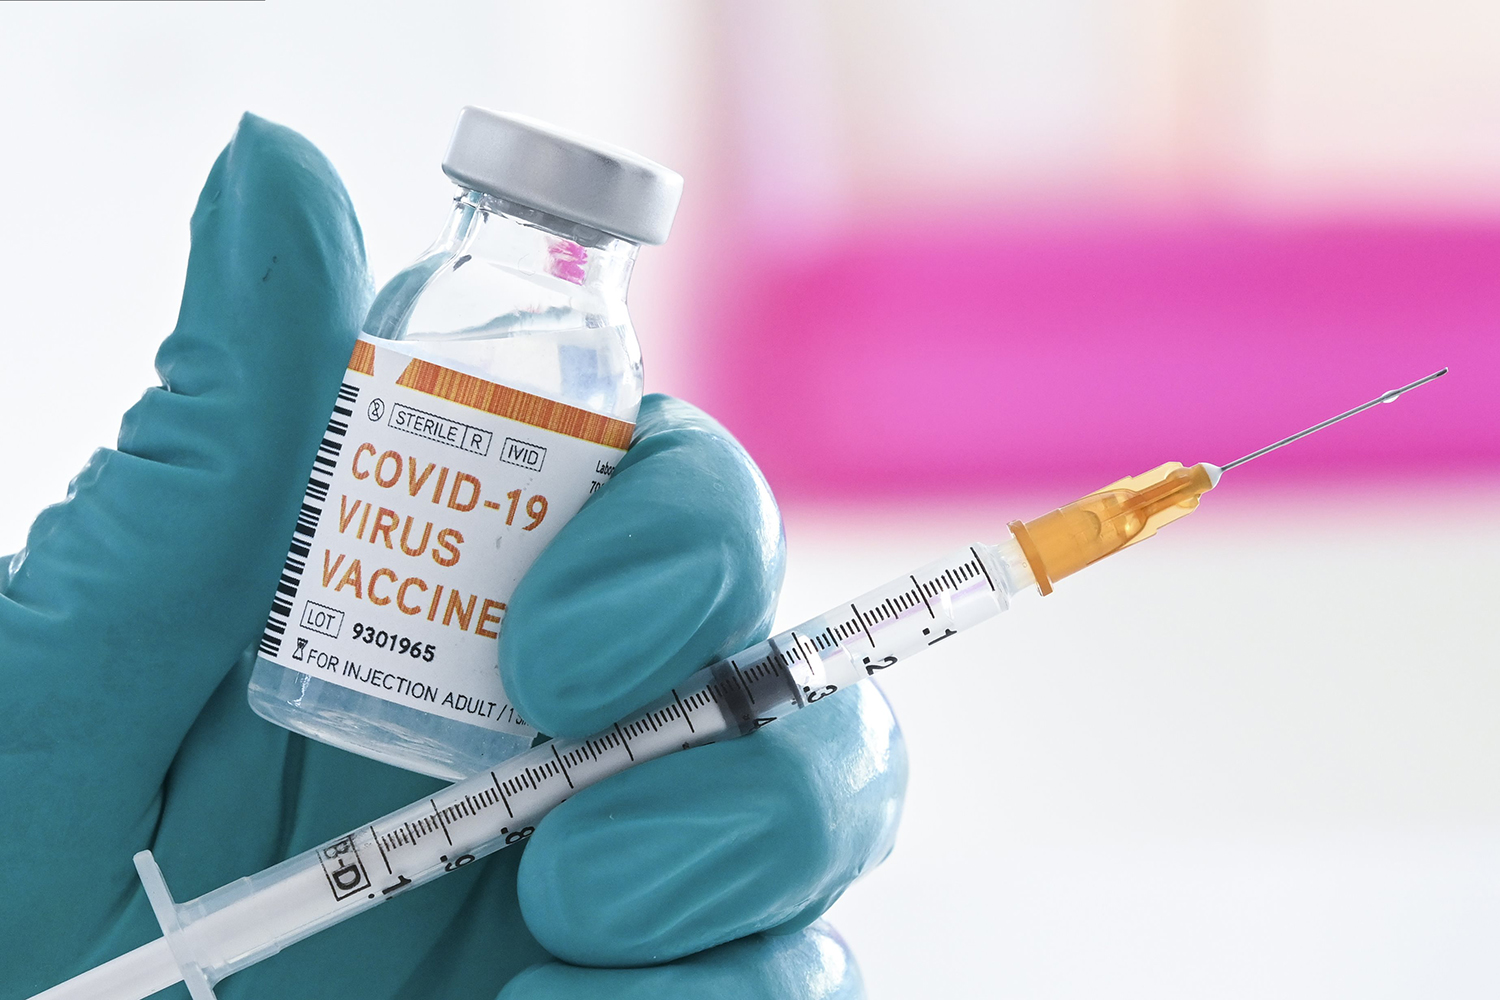 Brasil pode ficar sem a primeira vacina privada contra Covid-19 | VEJA